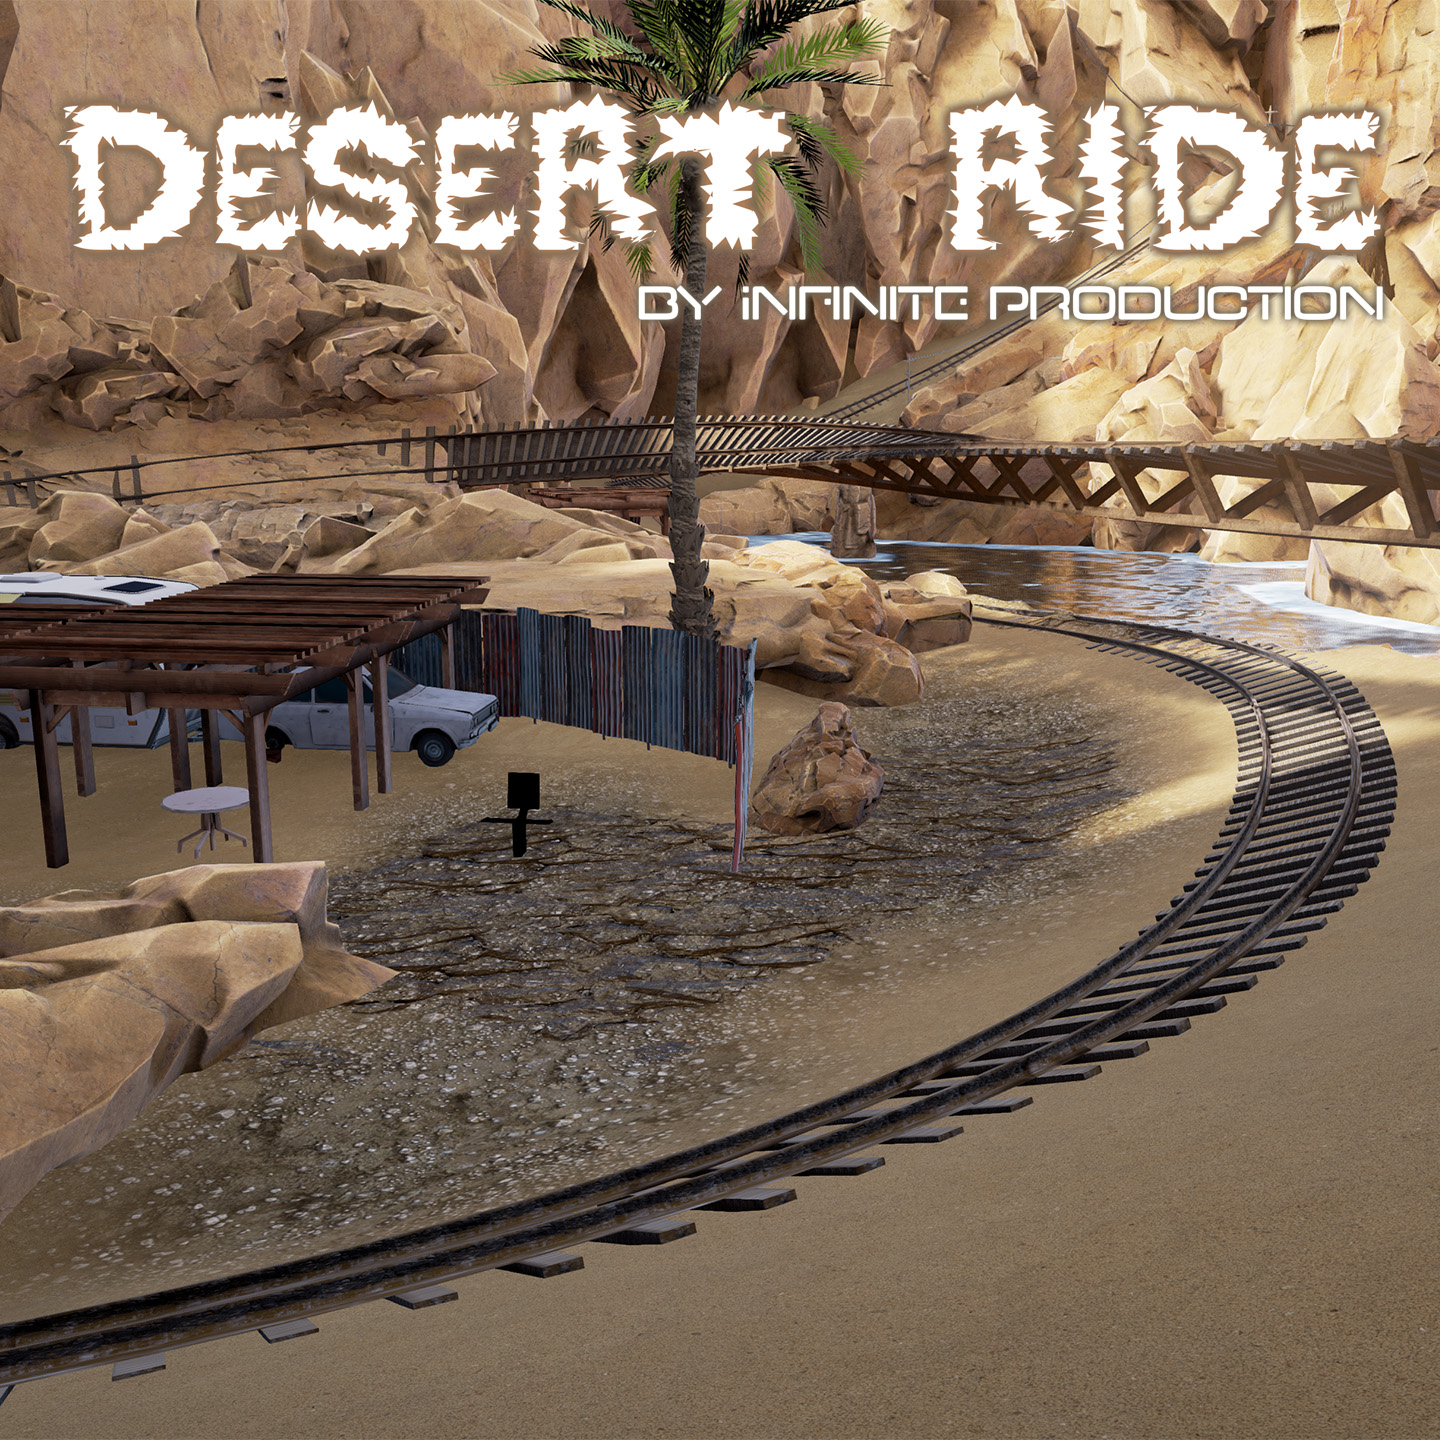 Desert Ride